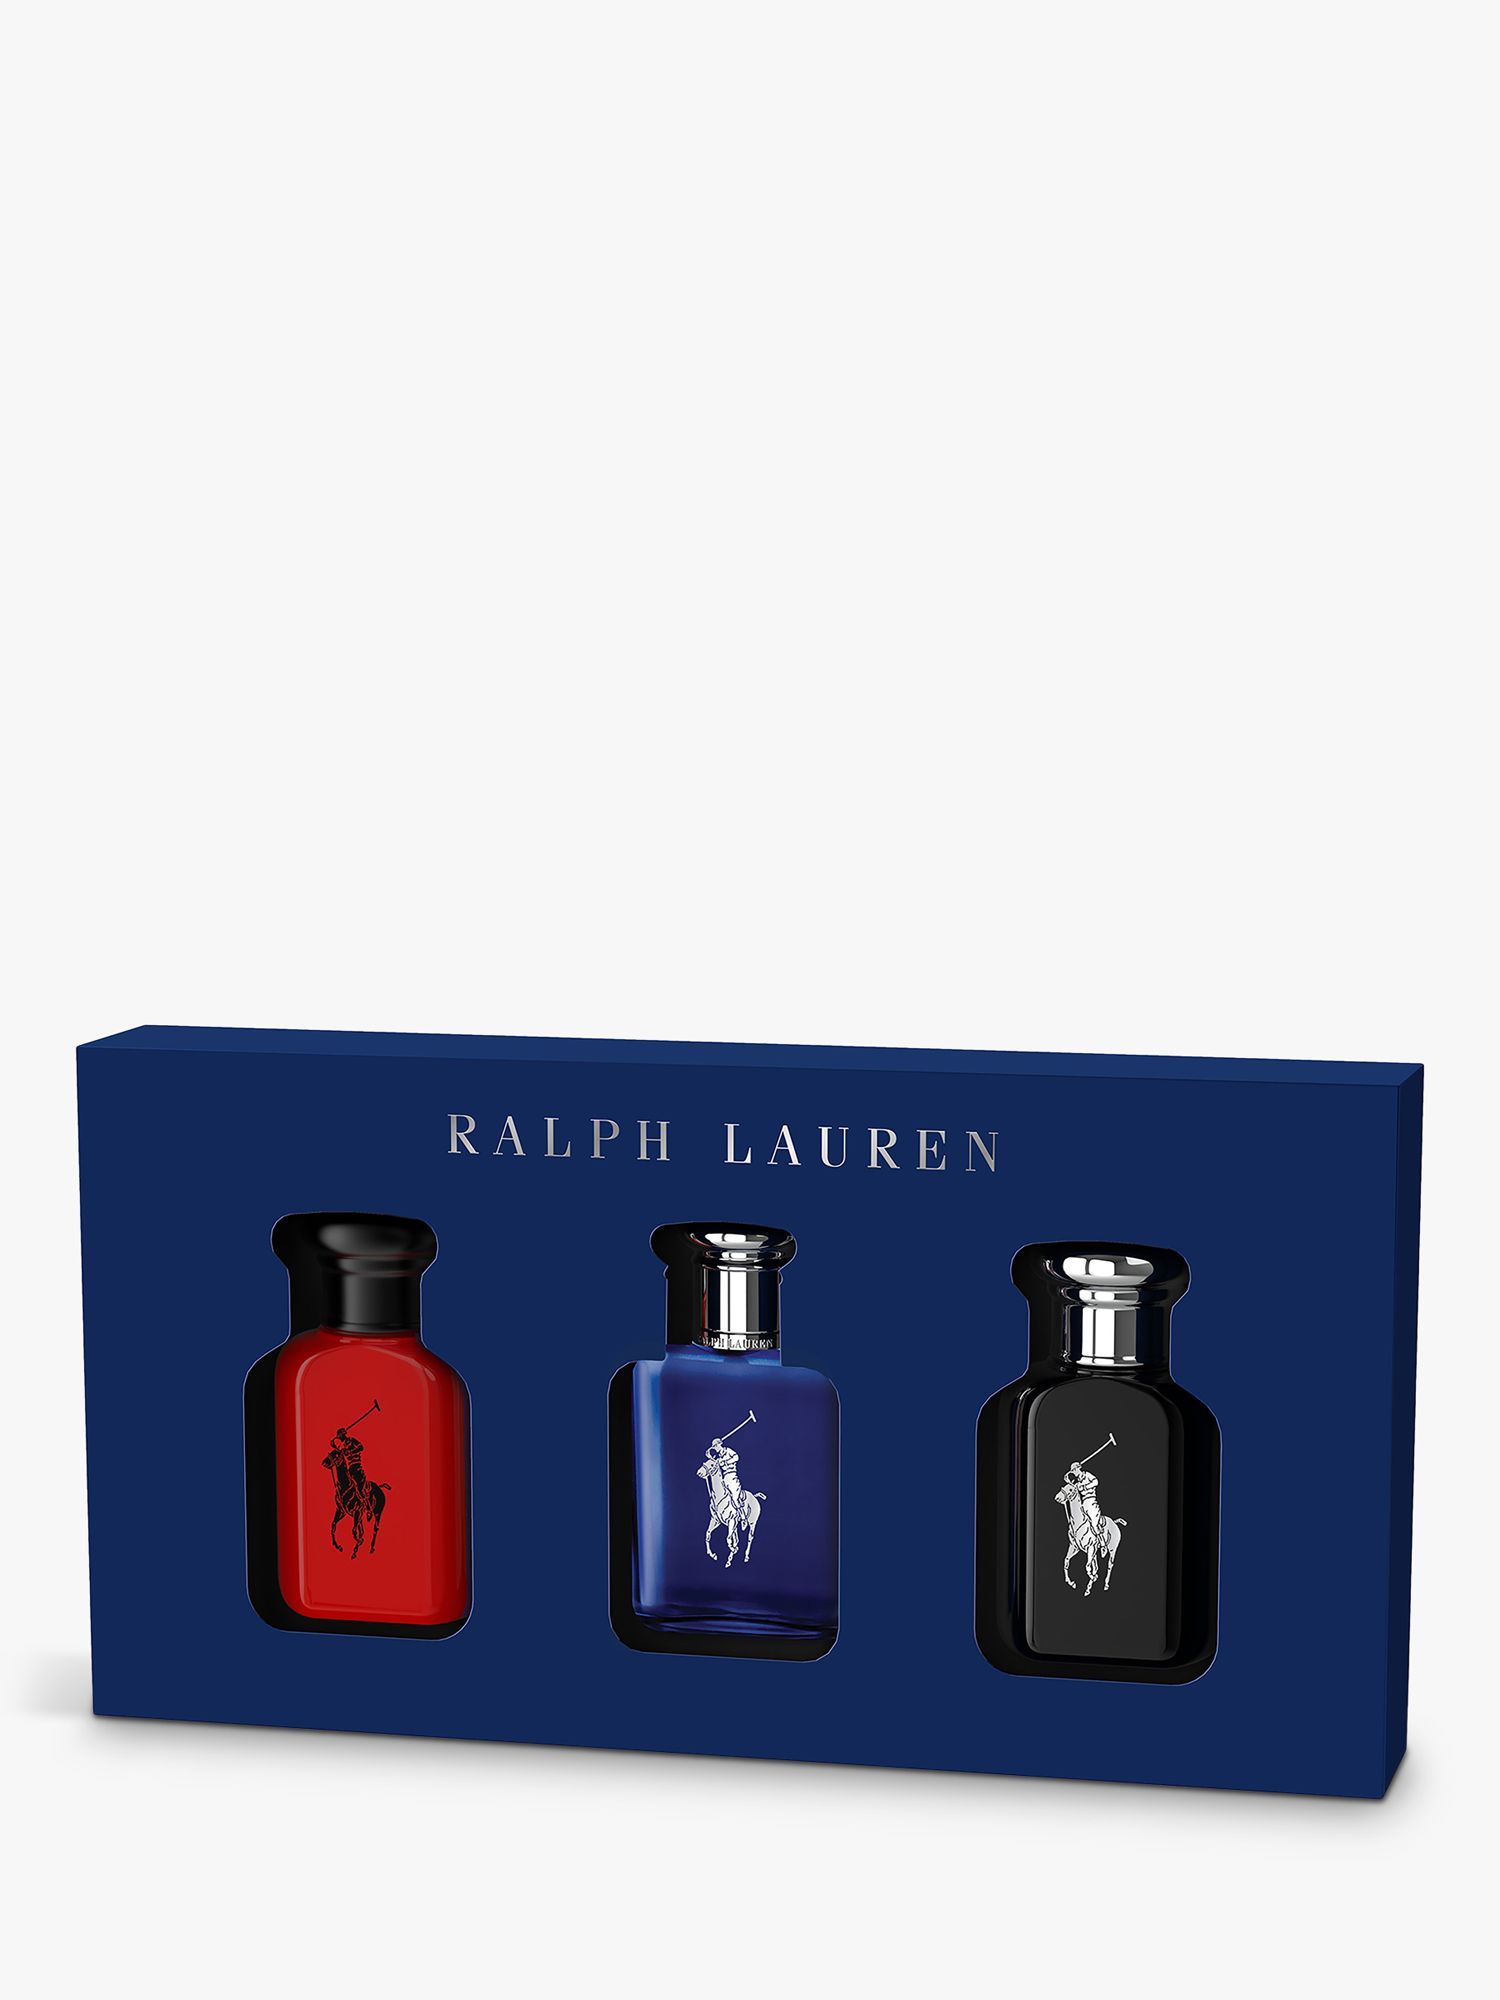 Ralph Lauren World of Polo Fragrance Gift Set, 3 x 40ml